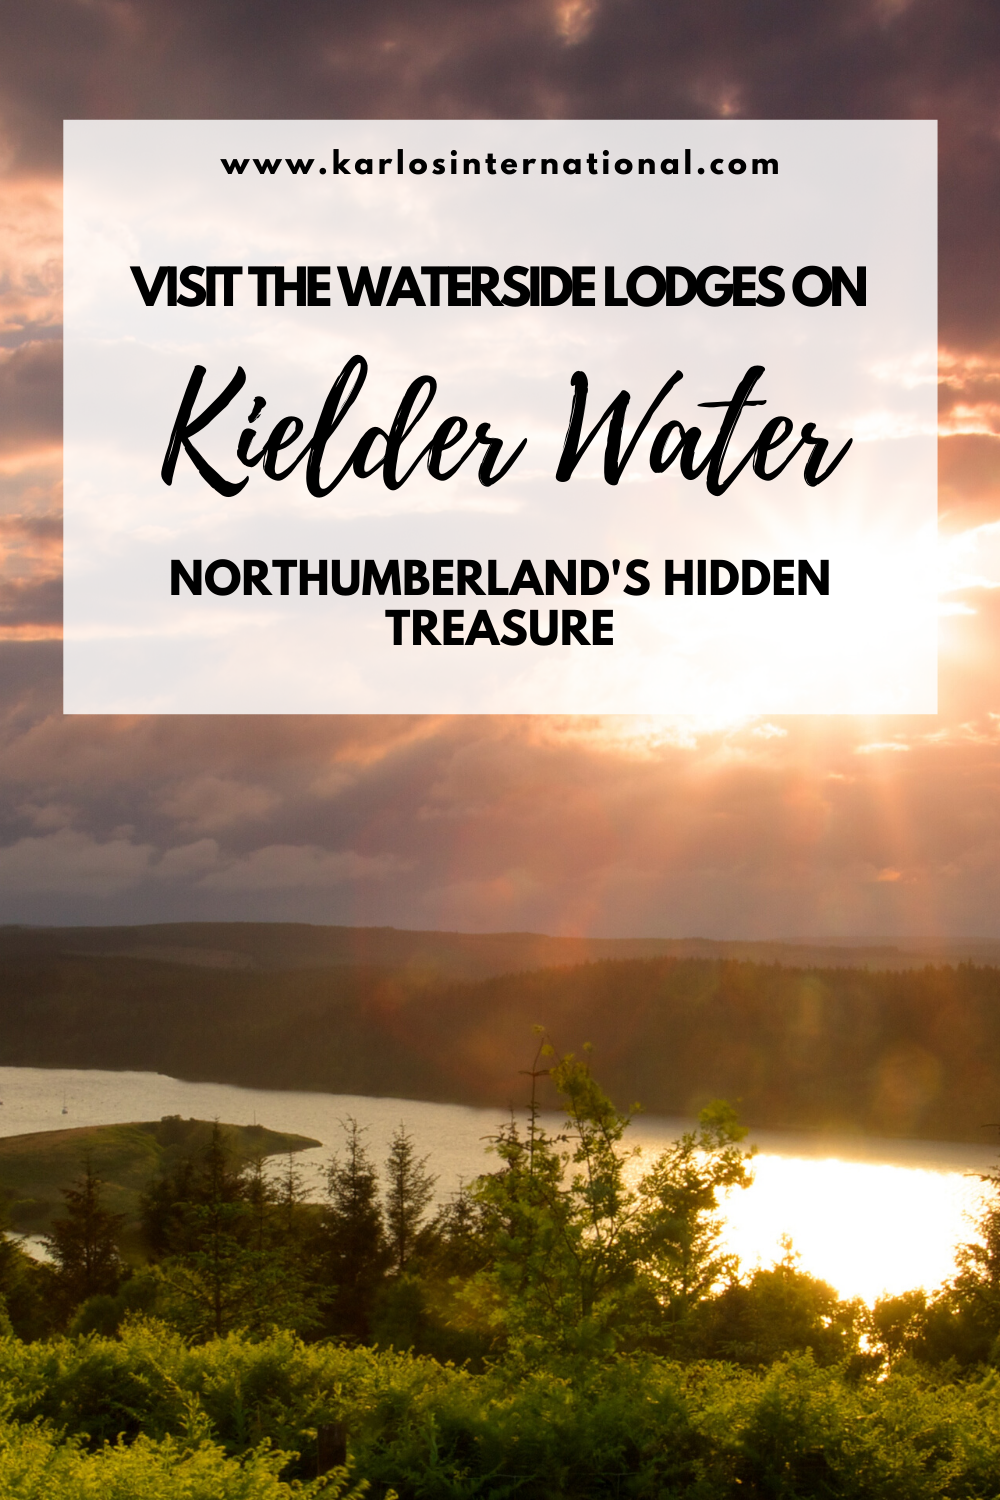 Visit the waterside lodges on Kielder Water - Northumberland's secret hideaway